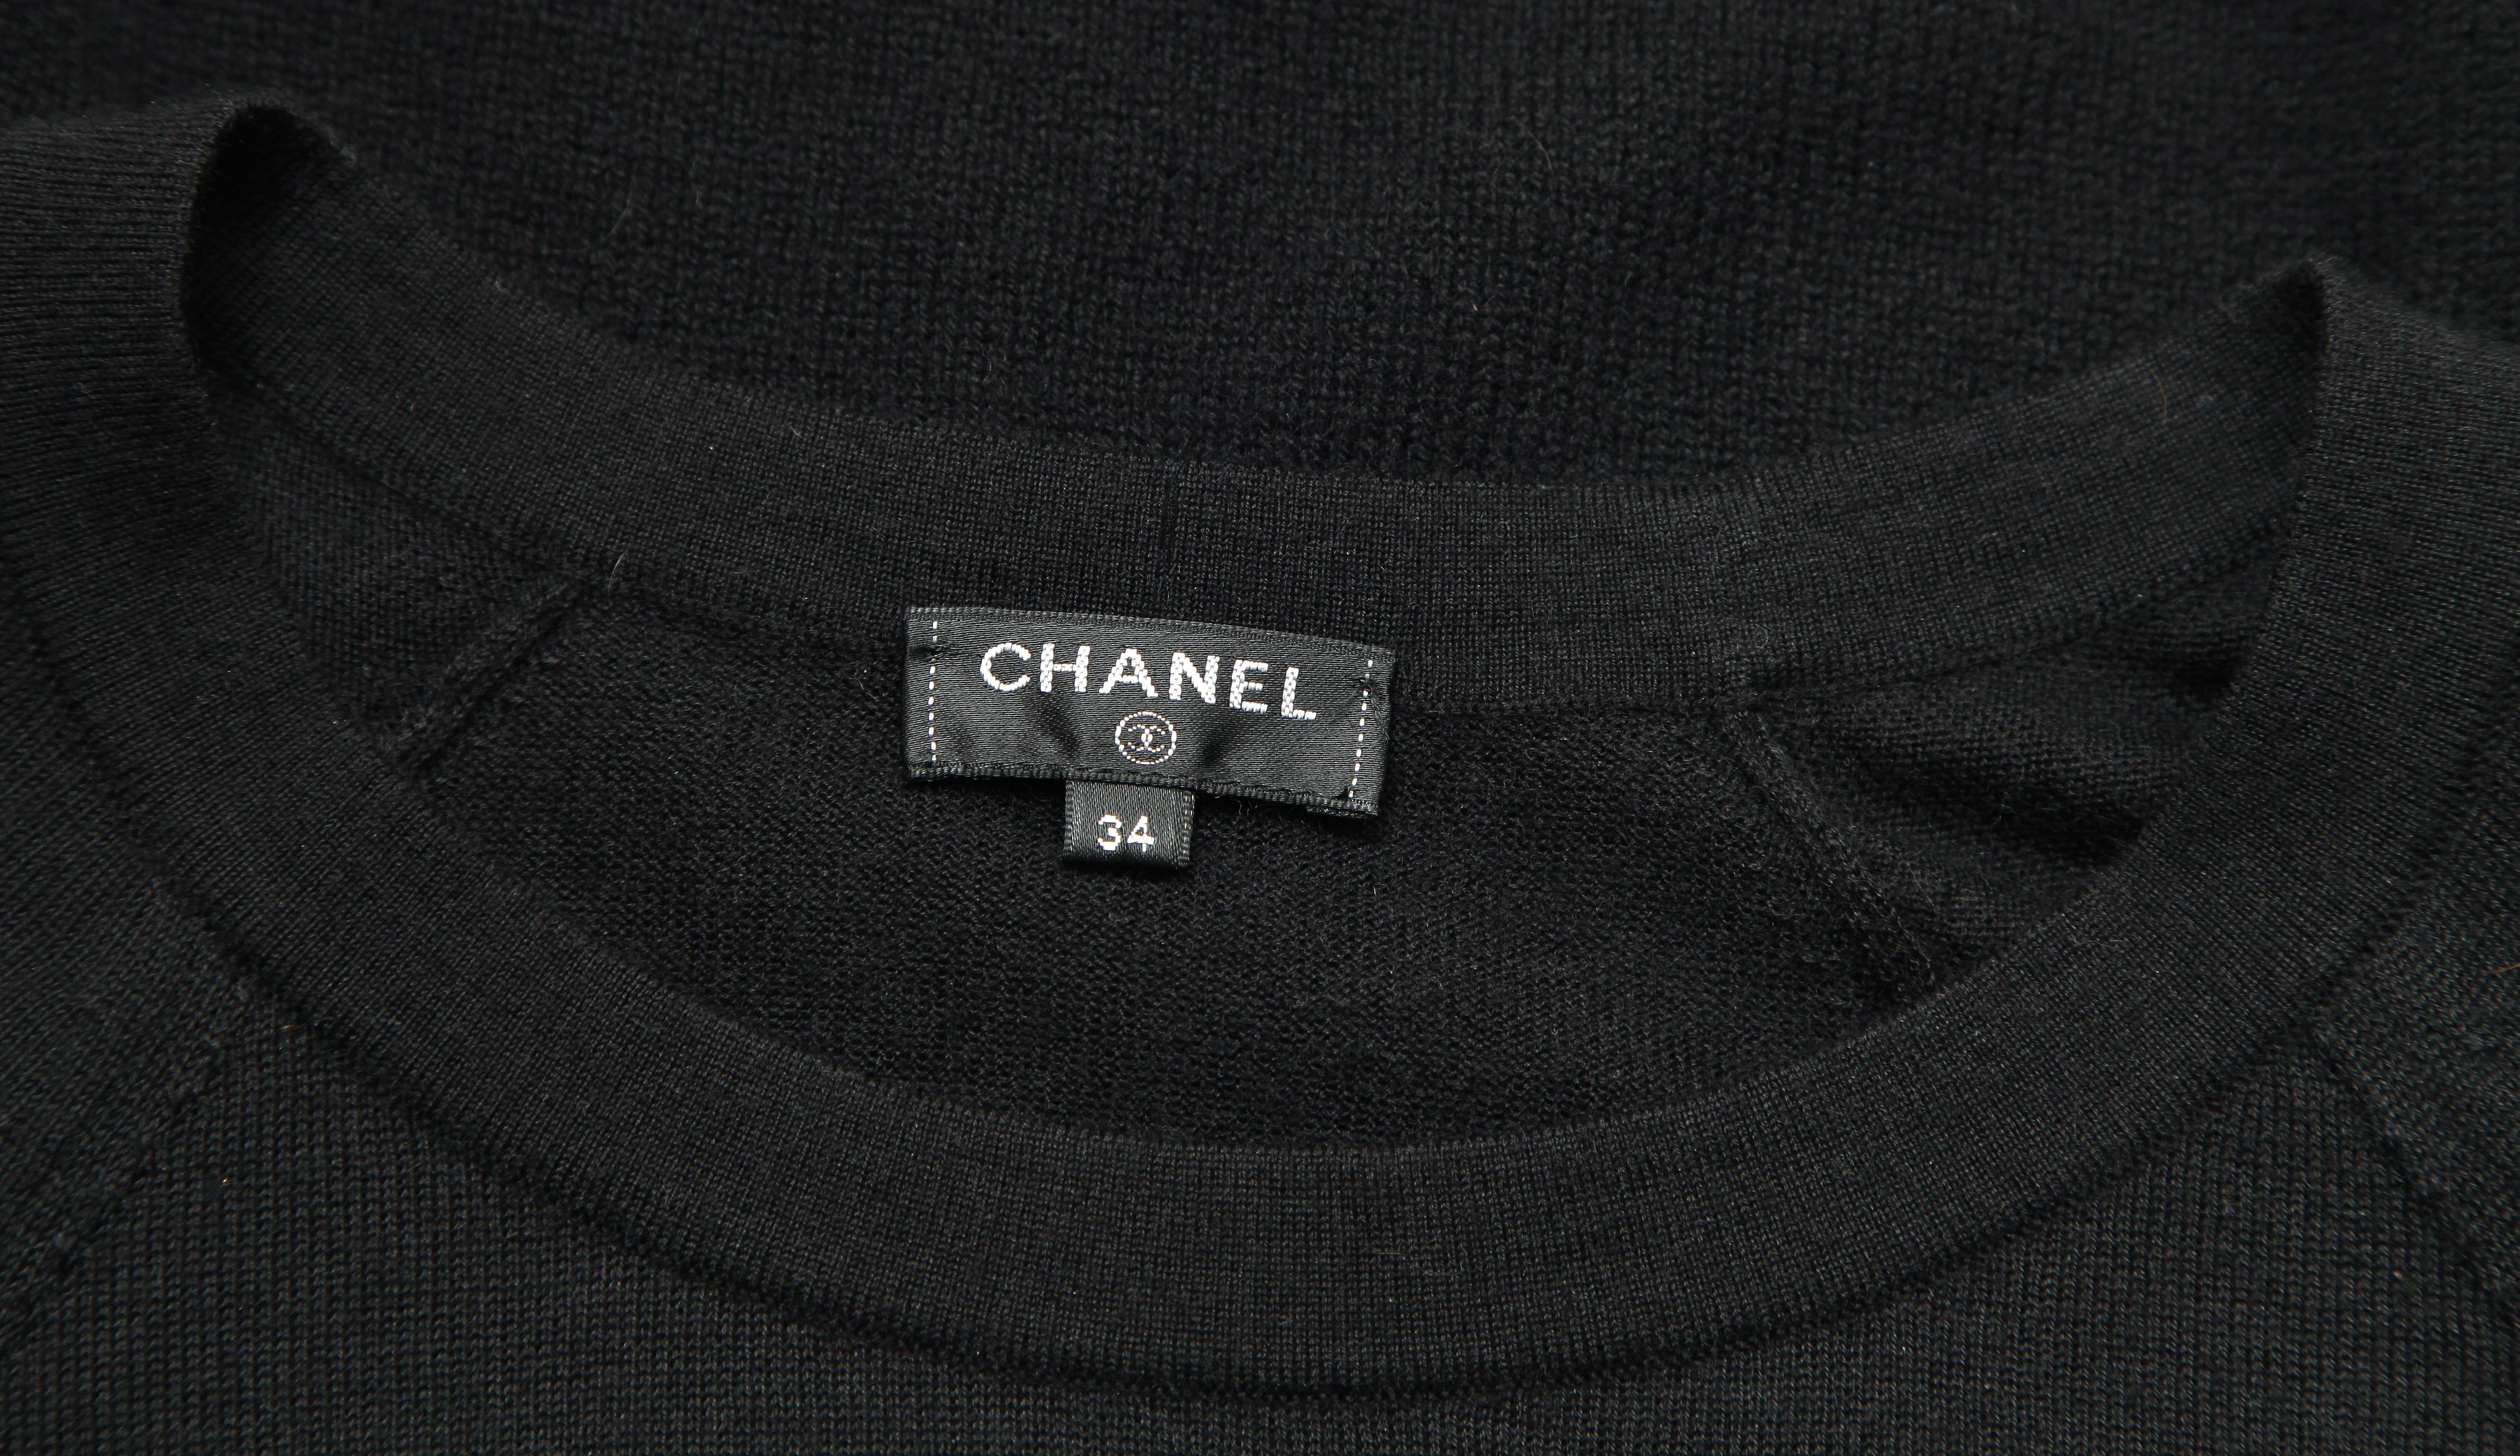 CHANEL Black Sweater Knit Top Long Sleeve Gold Tone Belt Tie Zipper HW Sz 34 For Sale 2